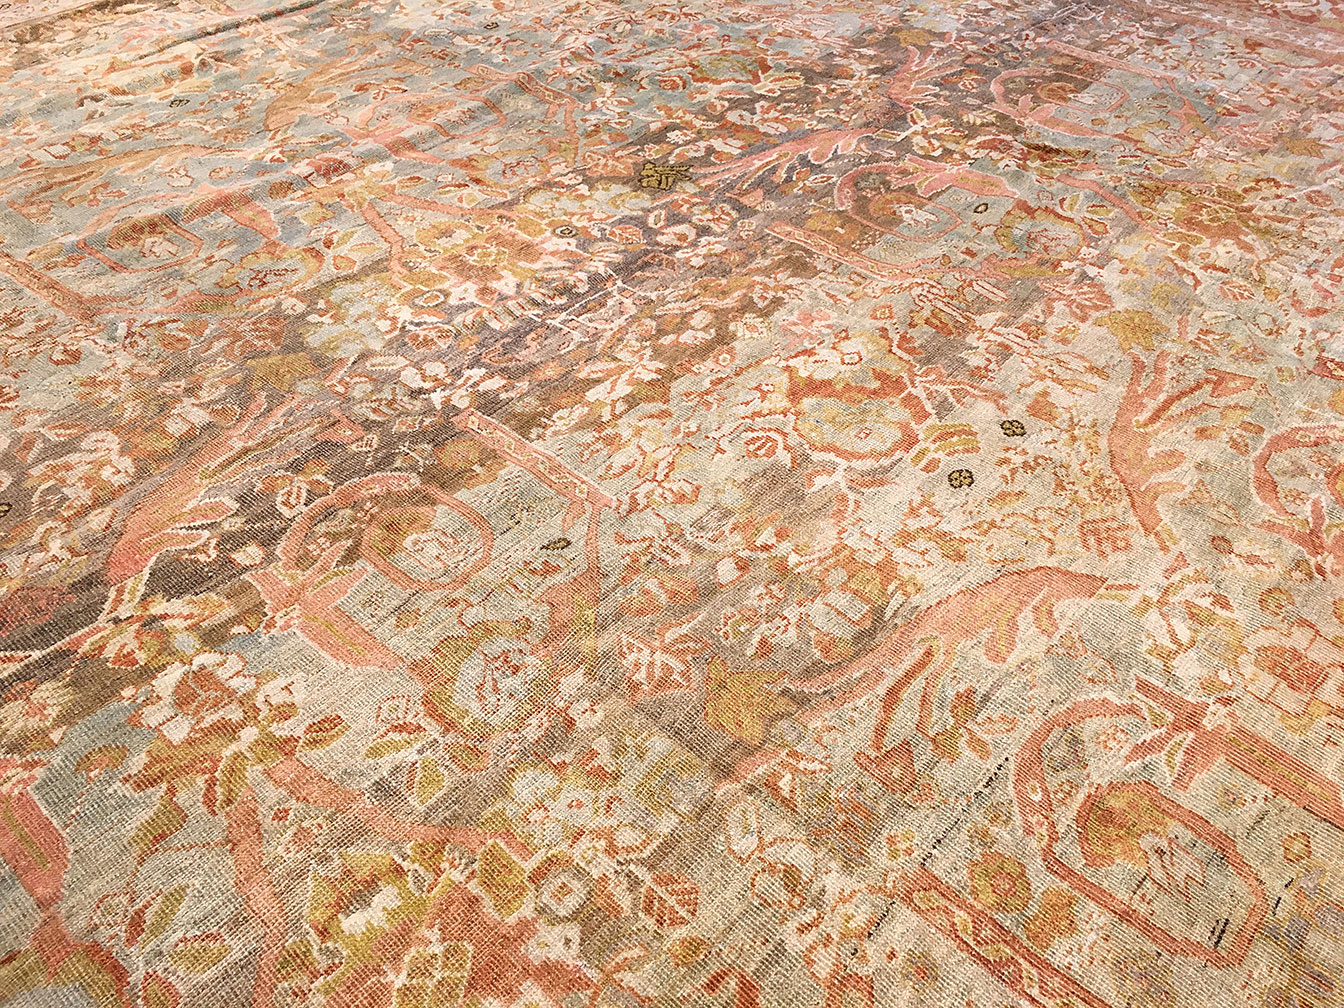 Antique mahal Carpet - # 51347